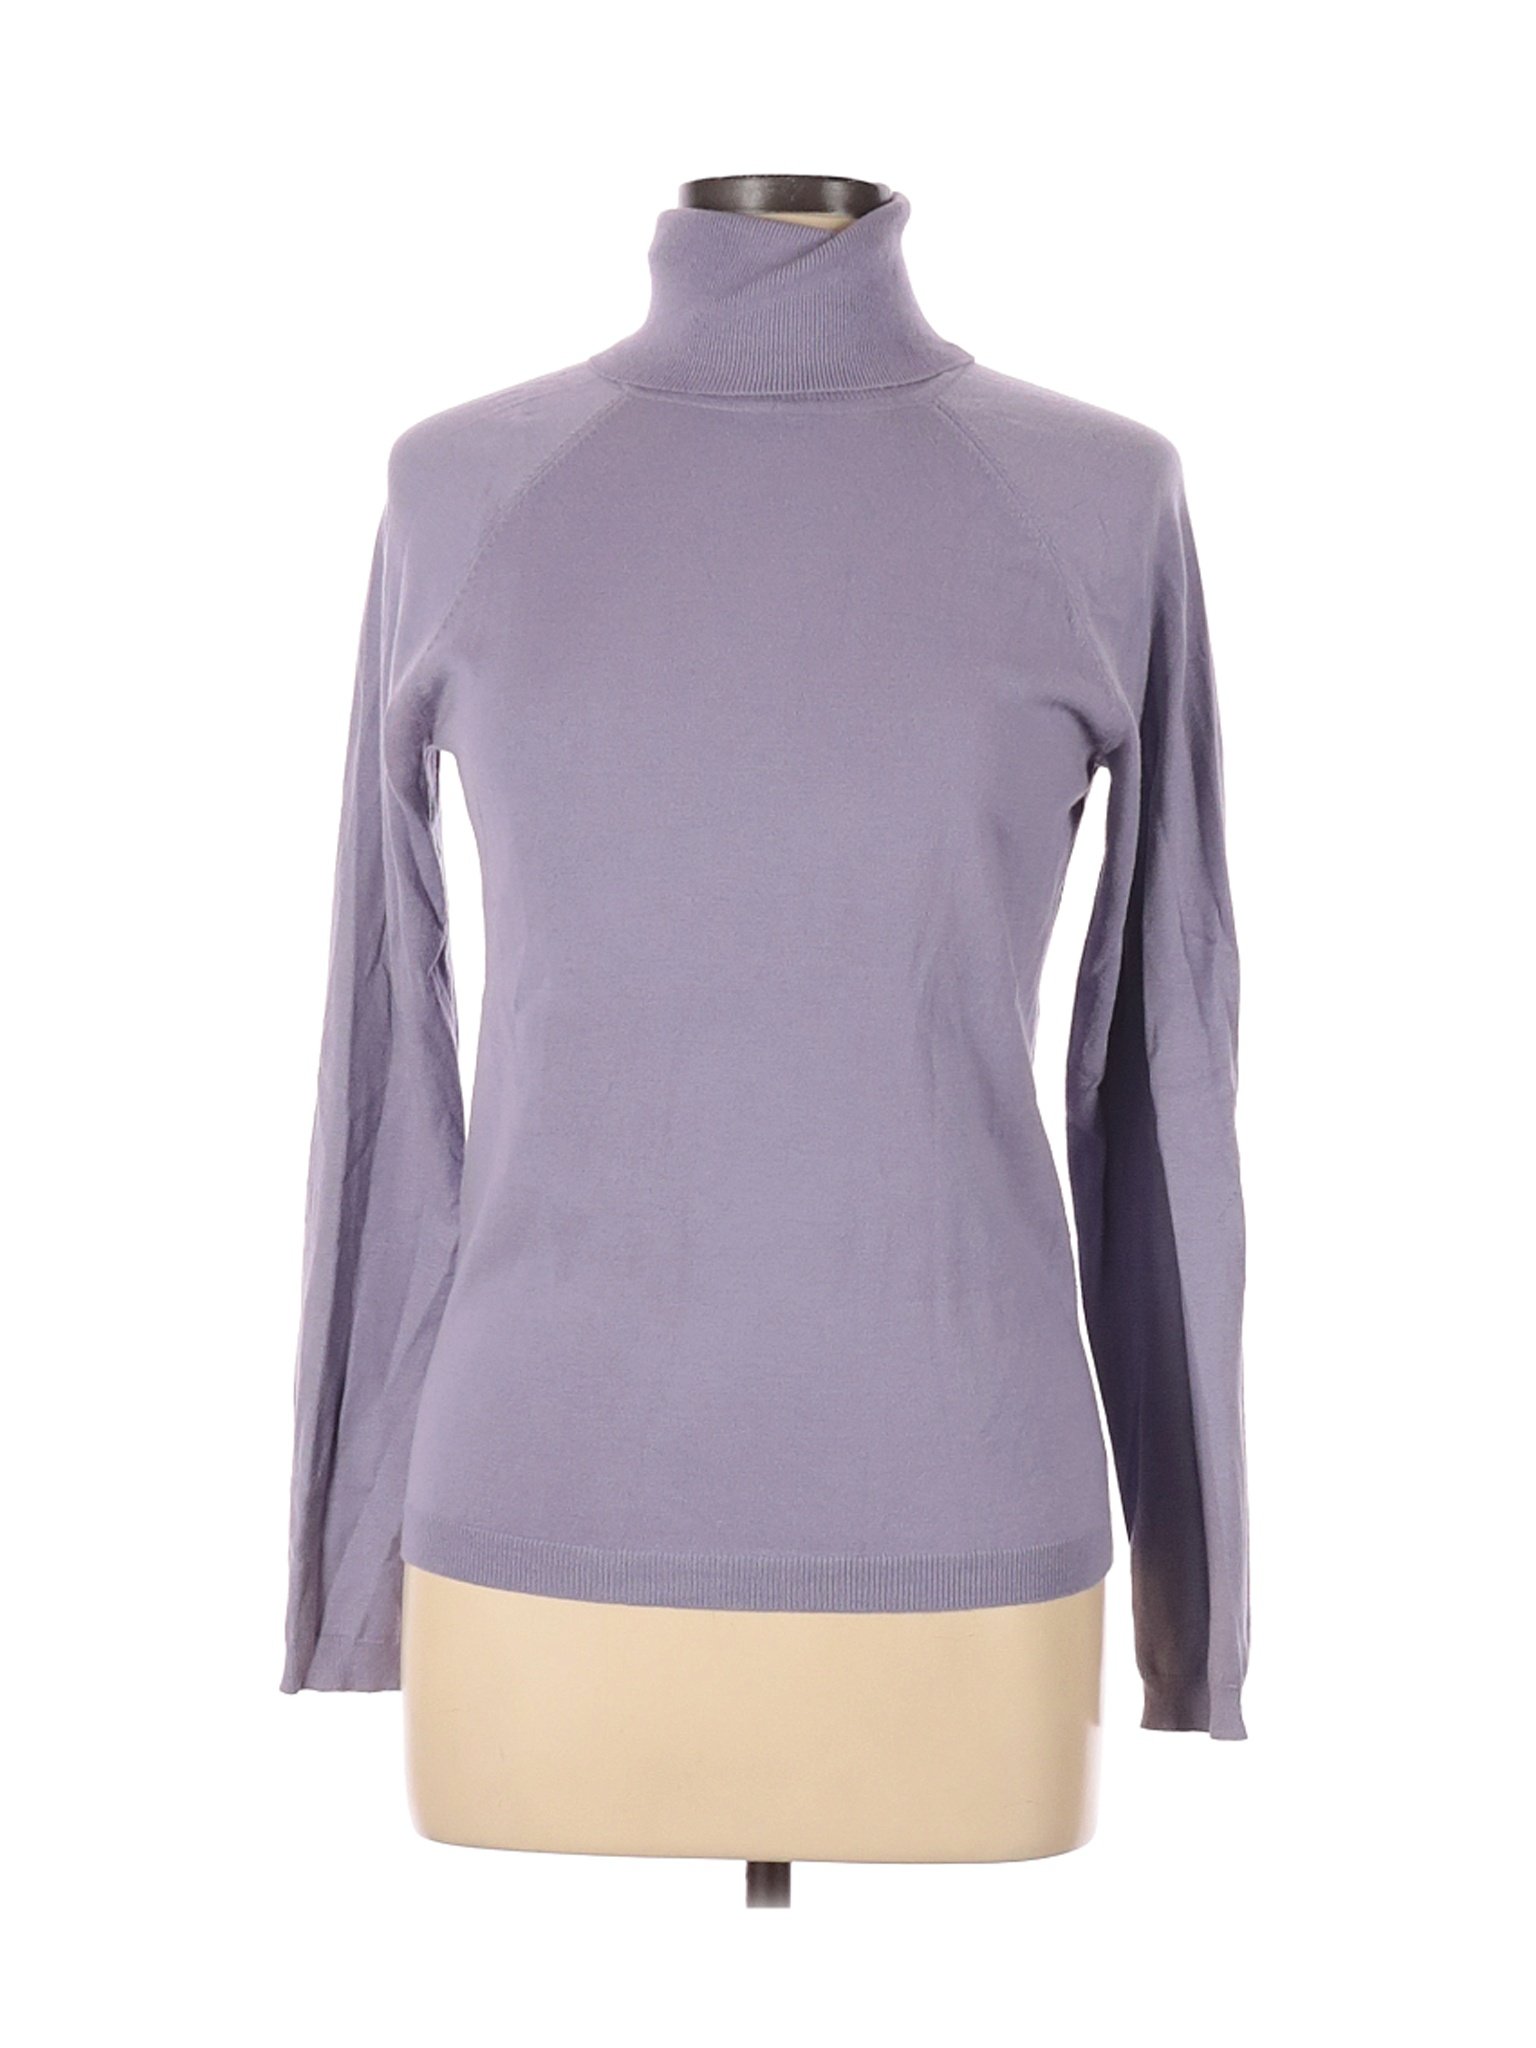 Talbots Women Purple Turtleneck Sweater M | eBay